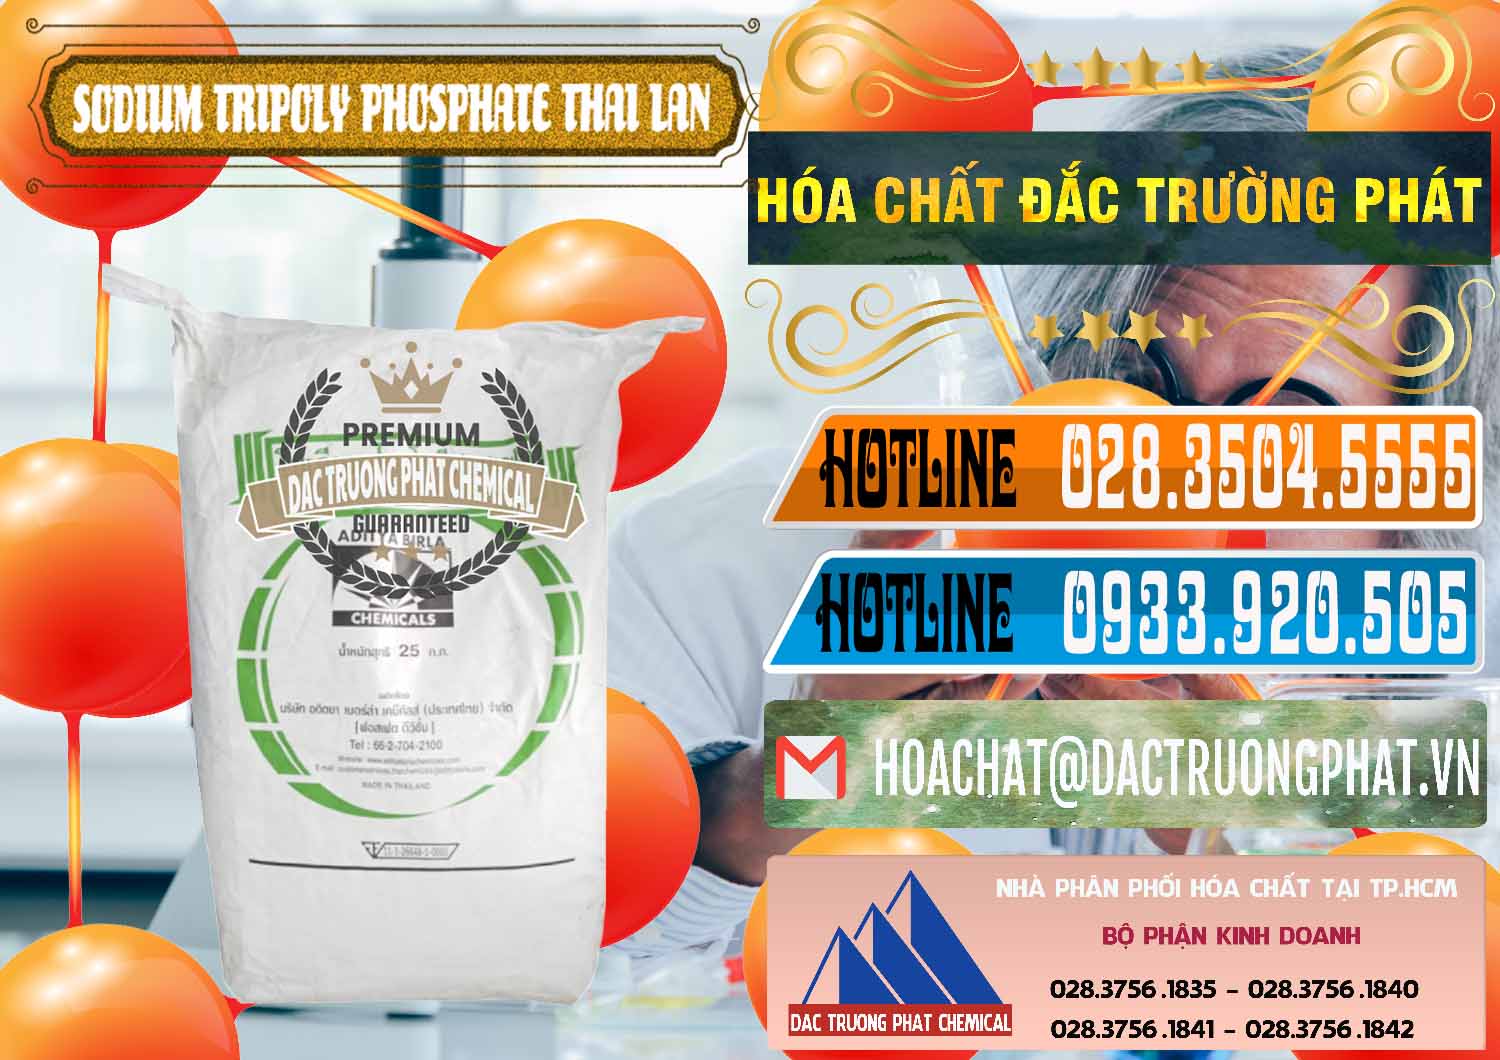 Công ty bán ( cung cấp ) Sodium Tripoly Phosphate - STPP Aditya Birla Grasim Thái Lan Thailand - 0421 - Nơi chuyên cung cấp - bán hóa chất tại TP.HCM - stmp.net